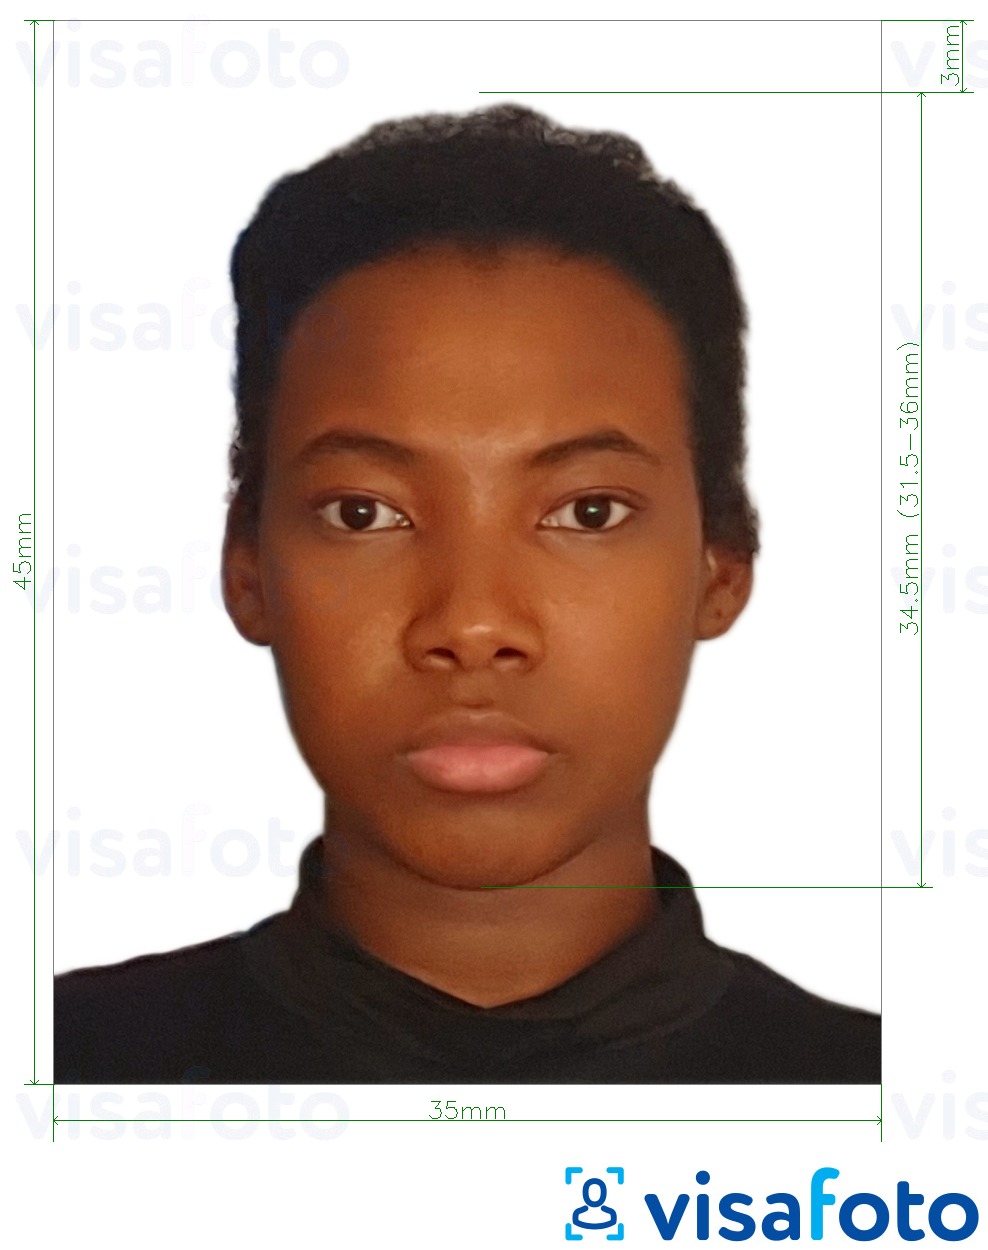 نمونه ی یک عکس برای گذرنامه جمهوری دموکراتیک کنگو کنگو 35x45 میلی متر (3.5x4.5 سانتی متر) با مشخصات دقیق